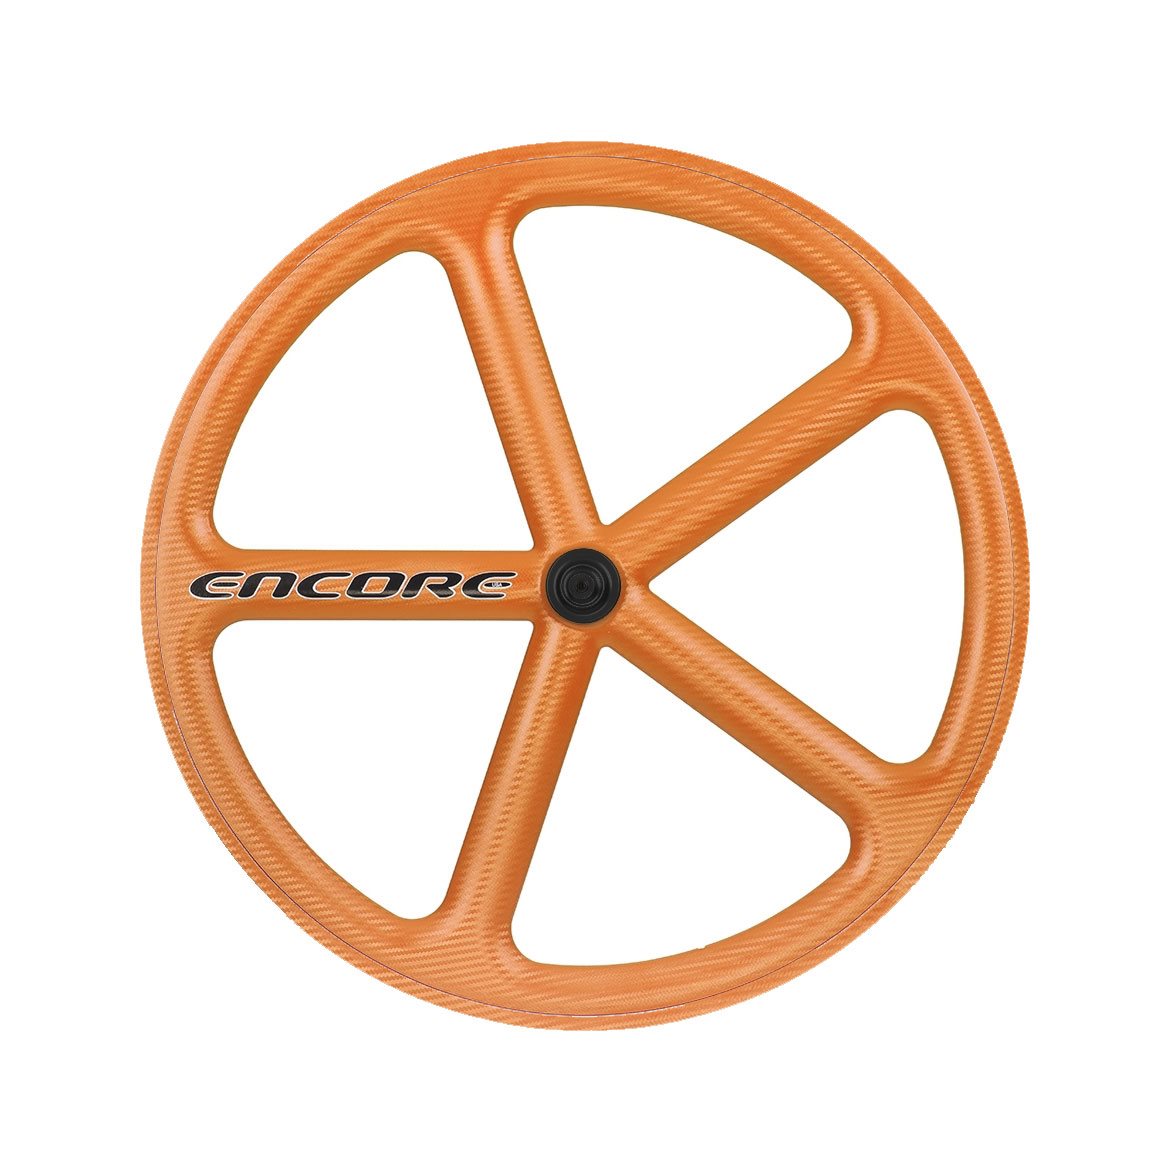 rear wheel 700c track 5 spokes carbon weave orange nmsw